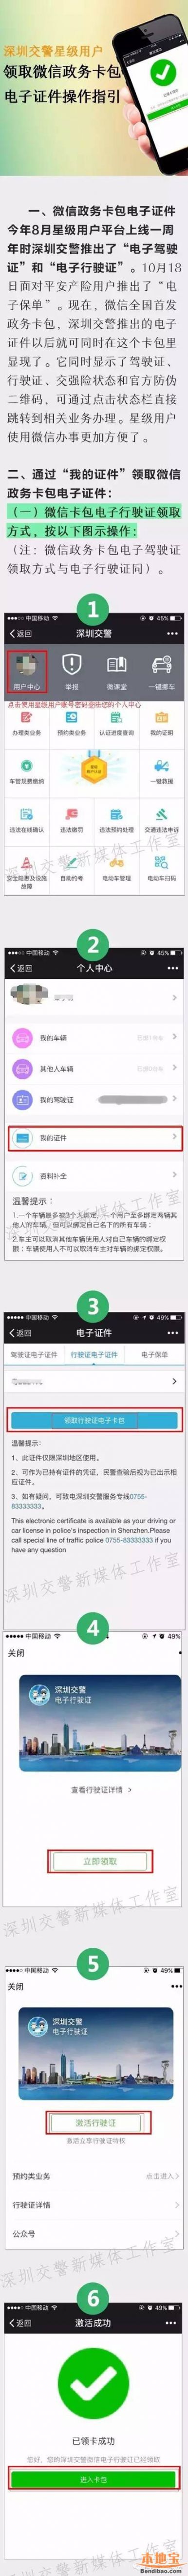 深圳交警星级用户微信卡包电子证件领取指南